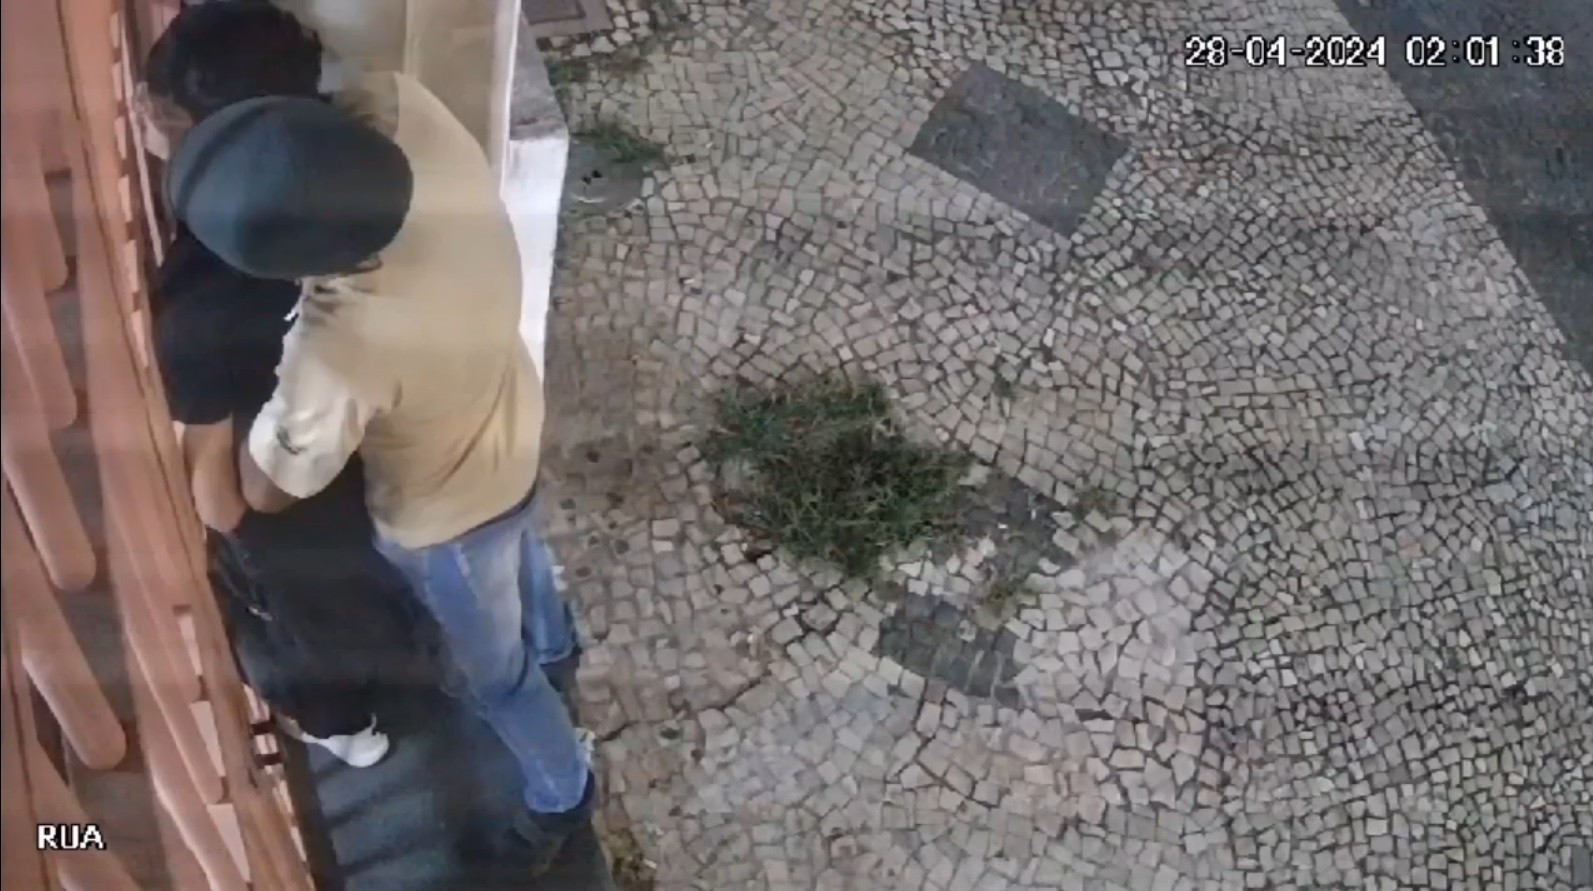 'Quase não saio de casa': cozinheiro revela trauma após estupro em frente a prédio em Campinas